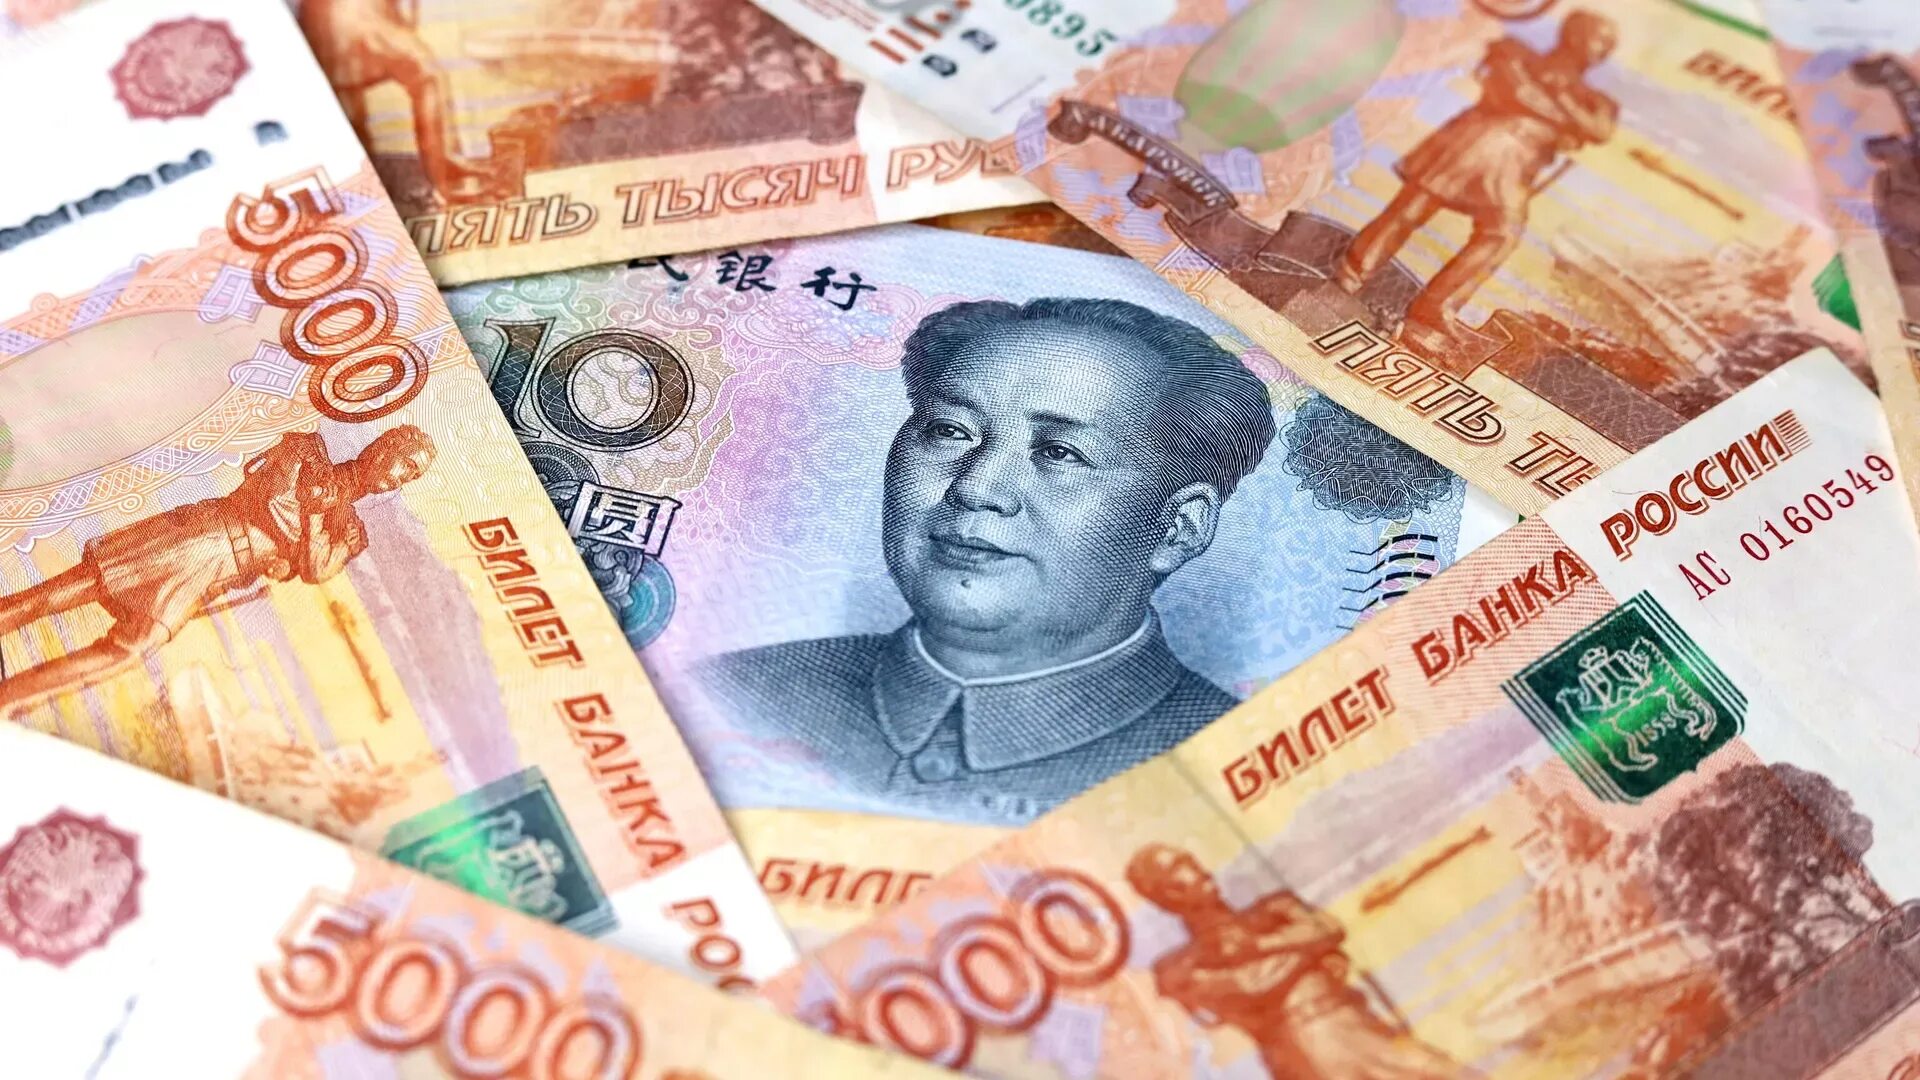 Китайский юань. Китайская валюта. Деньги юани. Юани в рубли.